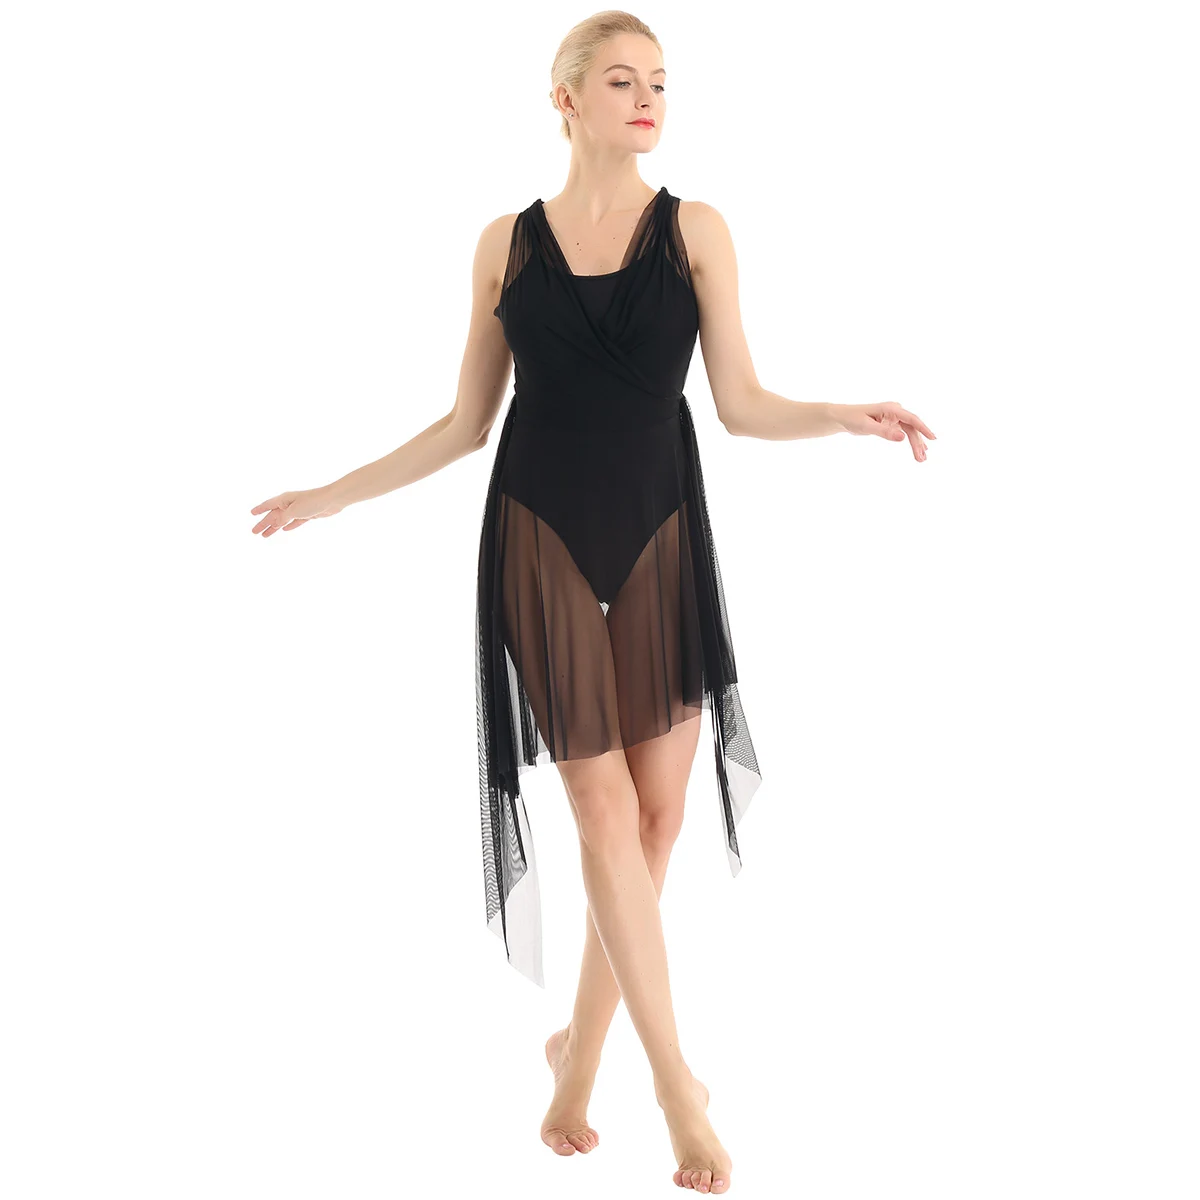 Женская юбка-пачка на взрослого танцевальный балетный ассиметричный гимнастический купальник для фигурного катания на коньках балерина сценический костюм